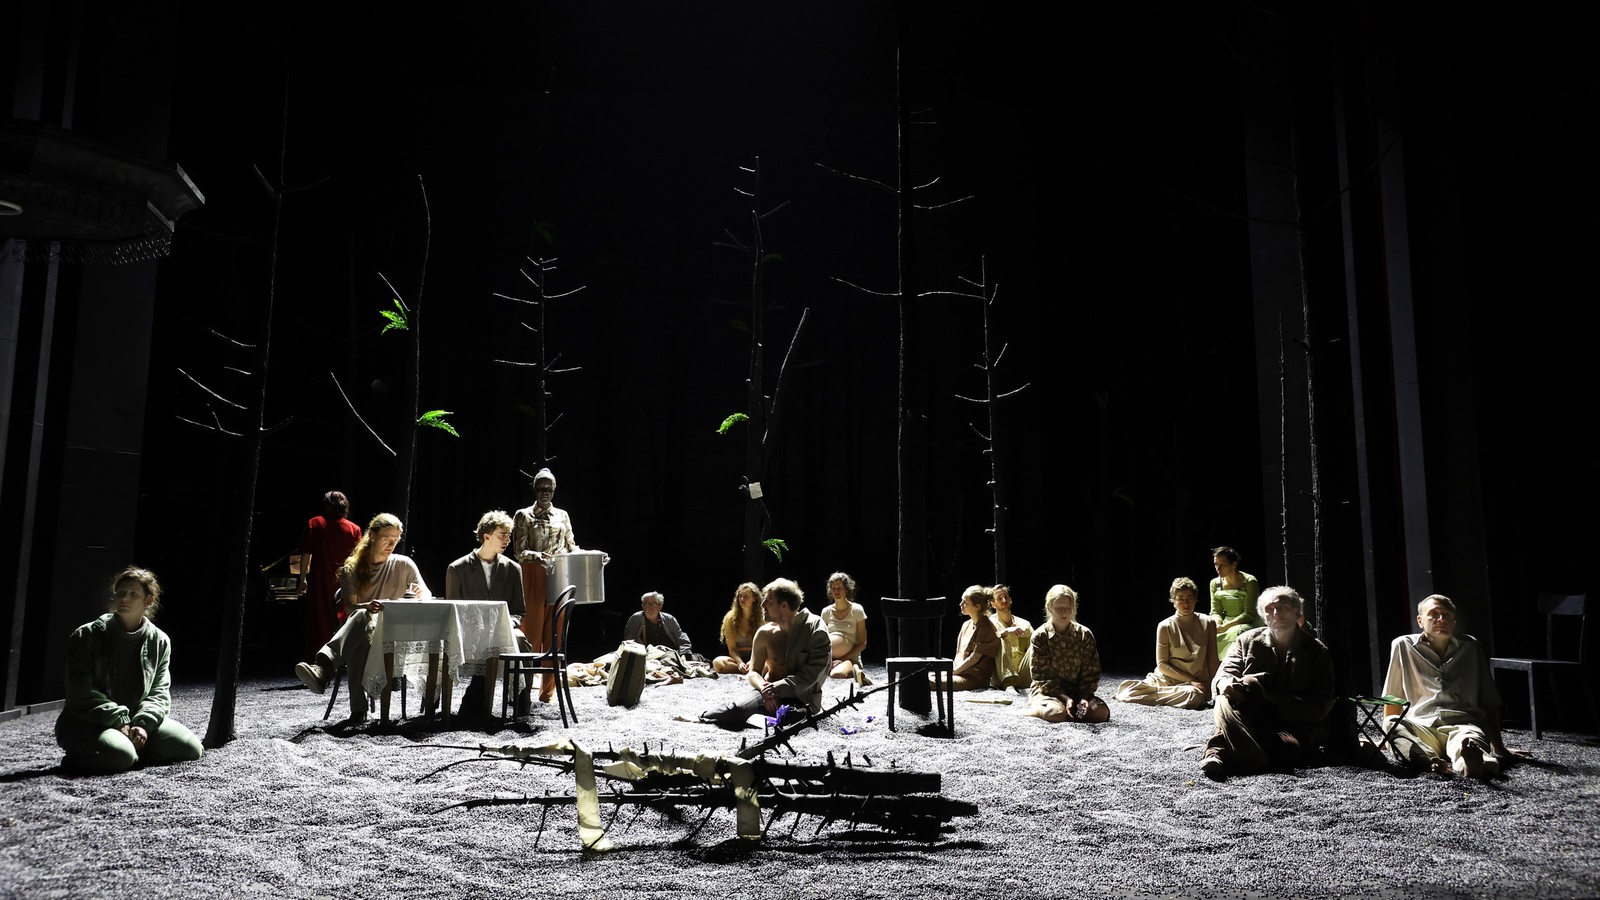 Szene aus "Erbarmen": Menschen sitzen auf einer Bühne im Licht